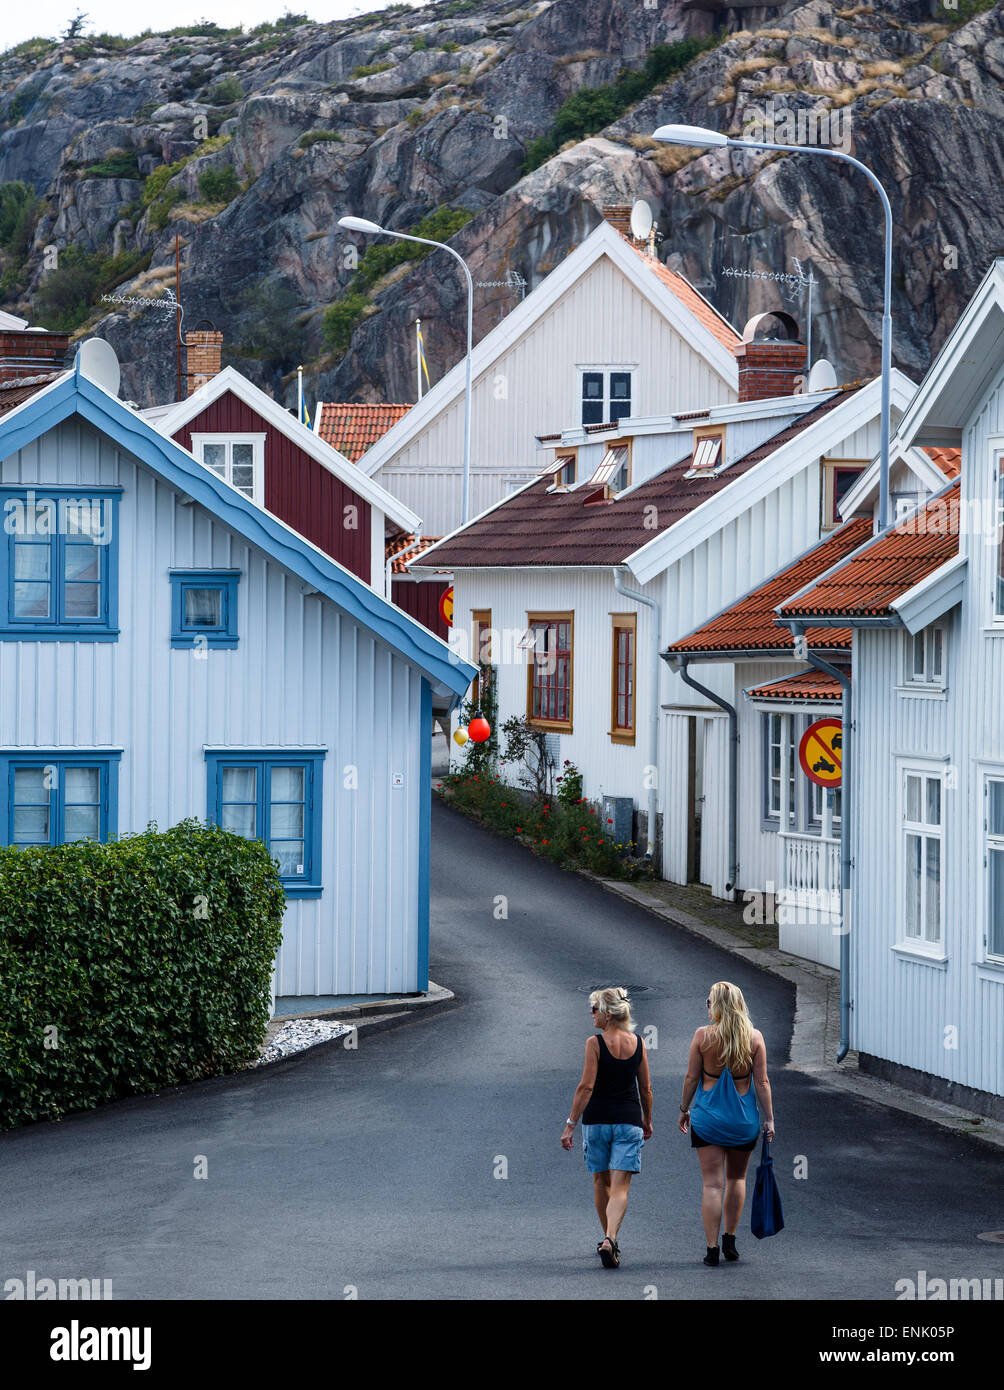 Street scene in Fjallbacka, Bohuslan region, west coast, Sweden, Scandinavia, Europe Stock Photo